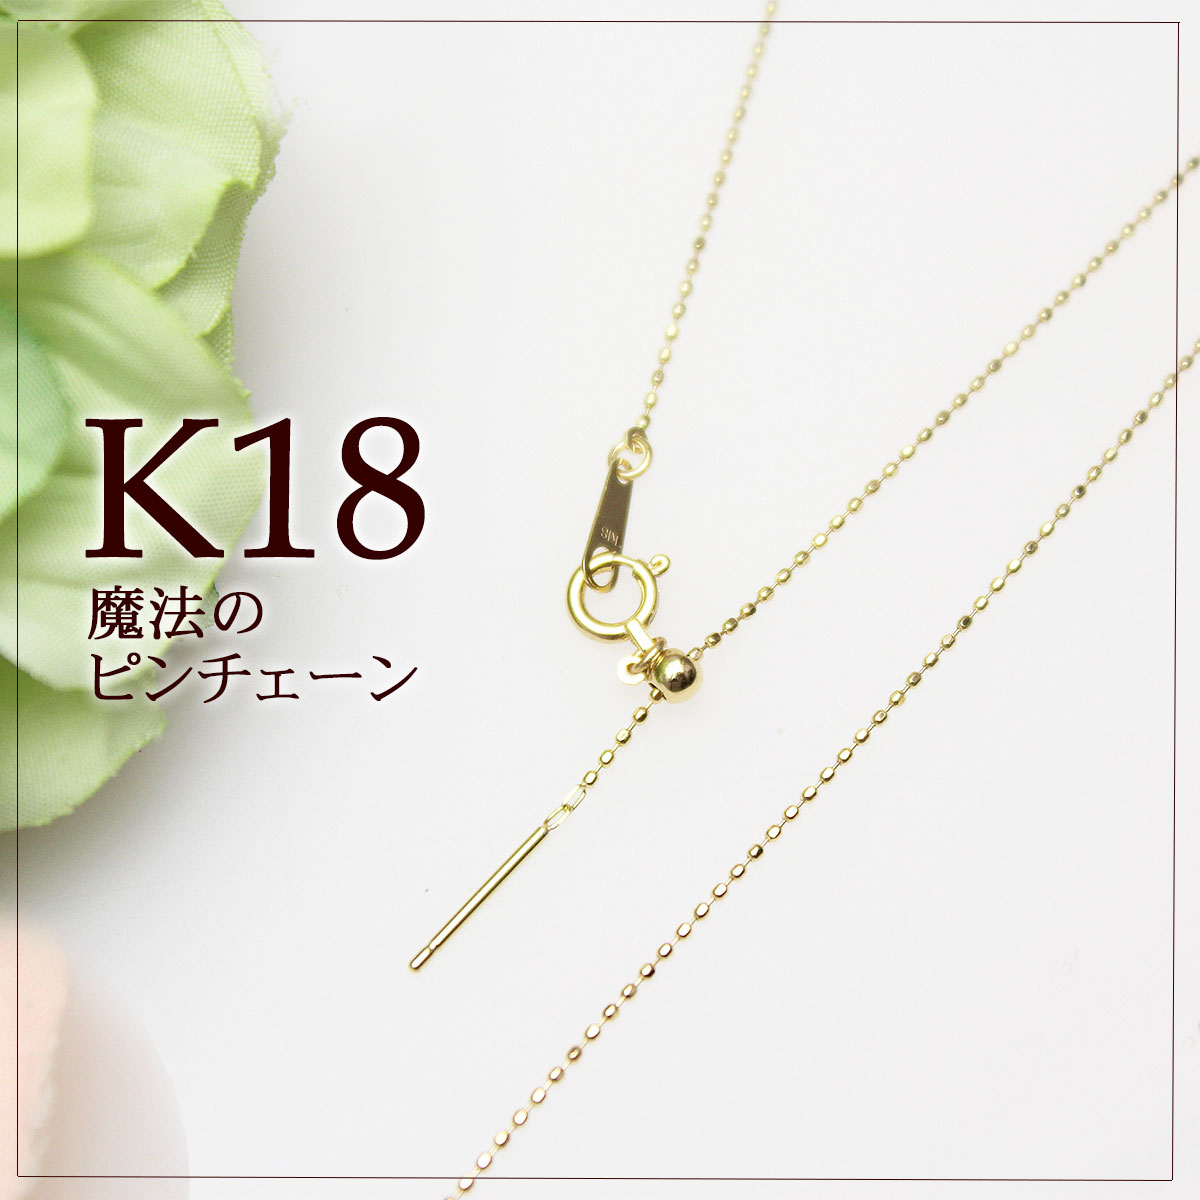 K18☆ダイヤモンドネックレス☆0.20ct☆スライドチェーンダイヤモンドネックレス